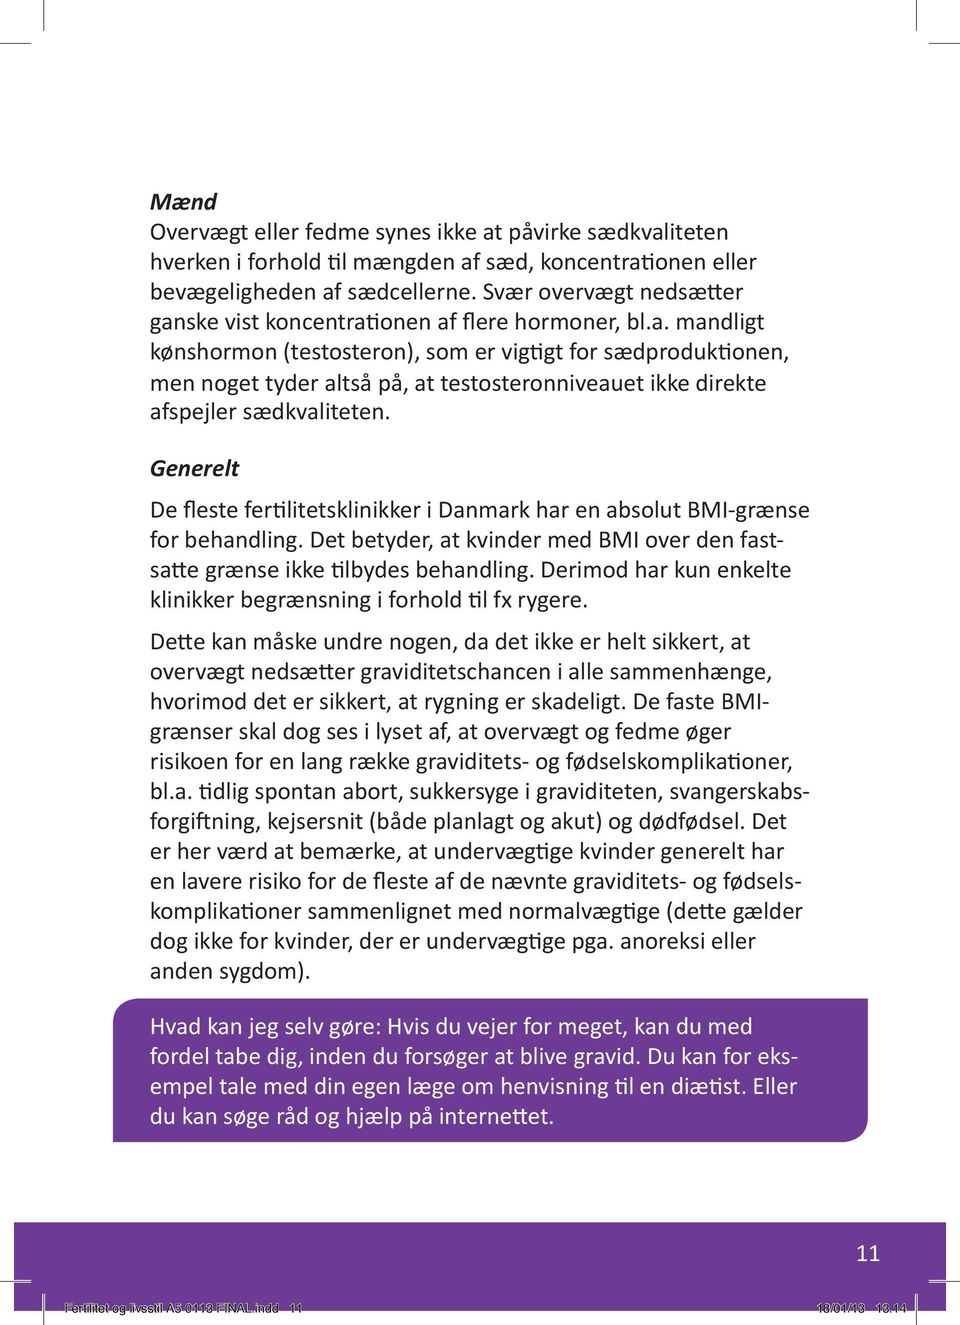 Generelt De fleste fertilitetsklinikker i Danmark har en absolut BMI-grænse for behandling. Det betyder, at kvinder med BMI over den fastsatte grænse ikke tilbydes behandling.